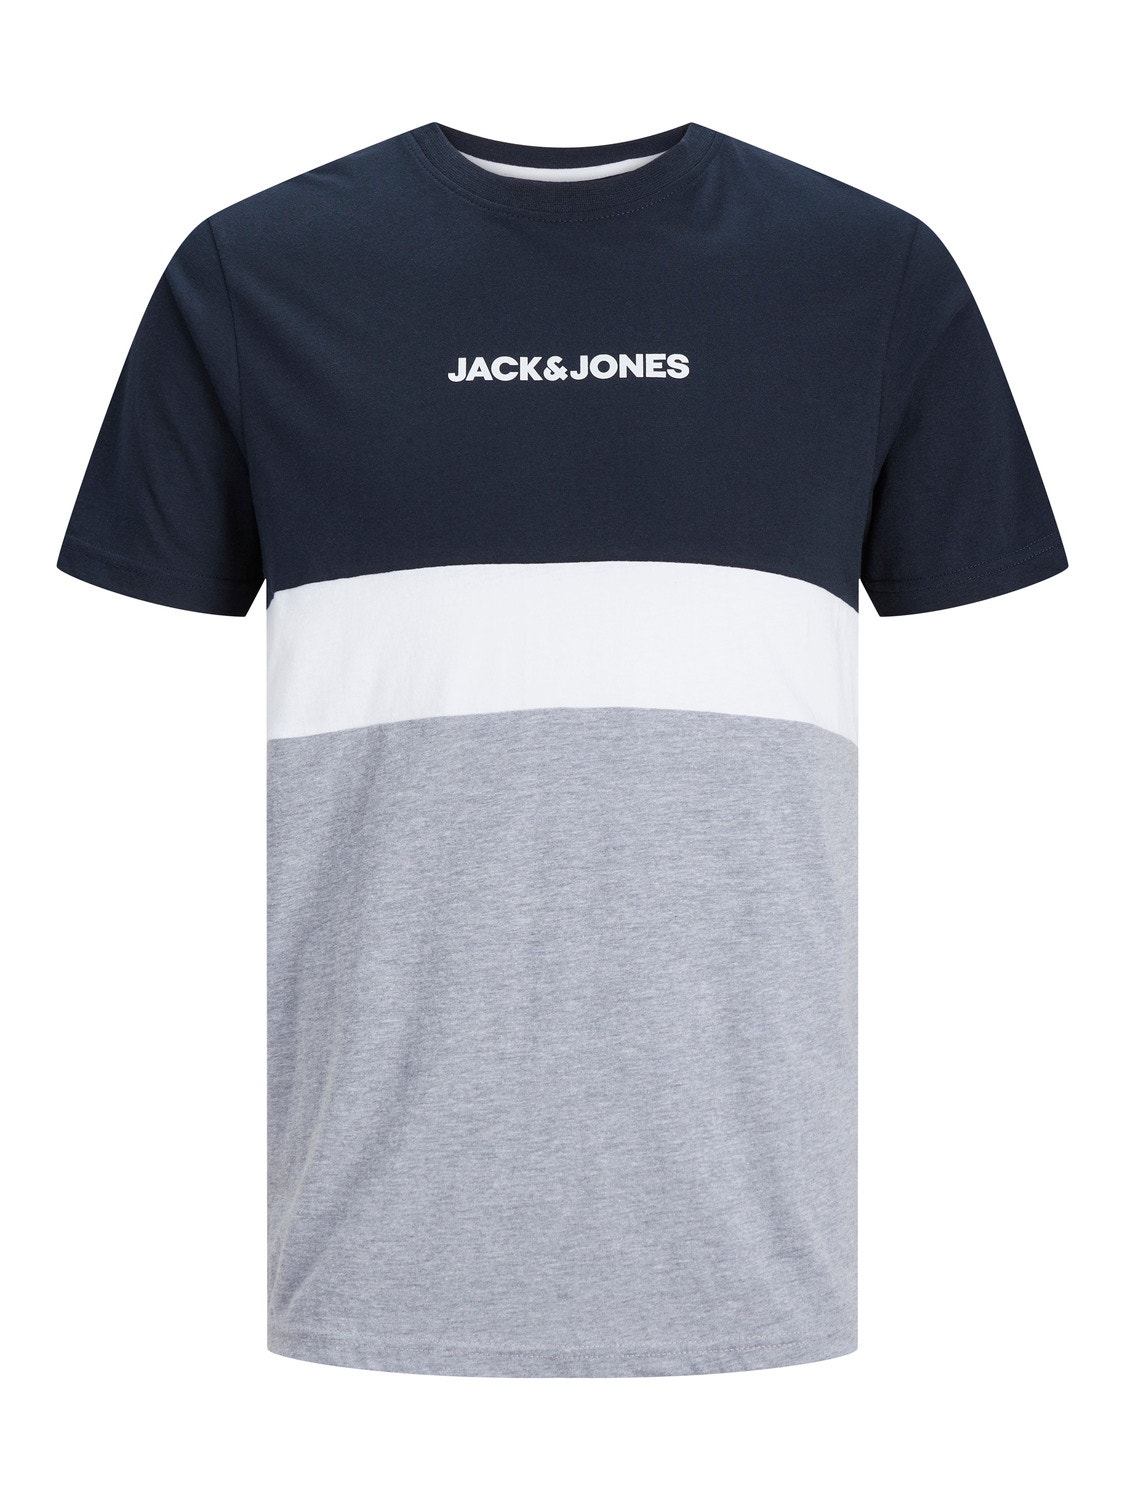 Jack & Jones Colour Blocking Rundhals T-shirt -Navy Blazer - 12233961